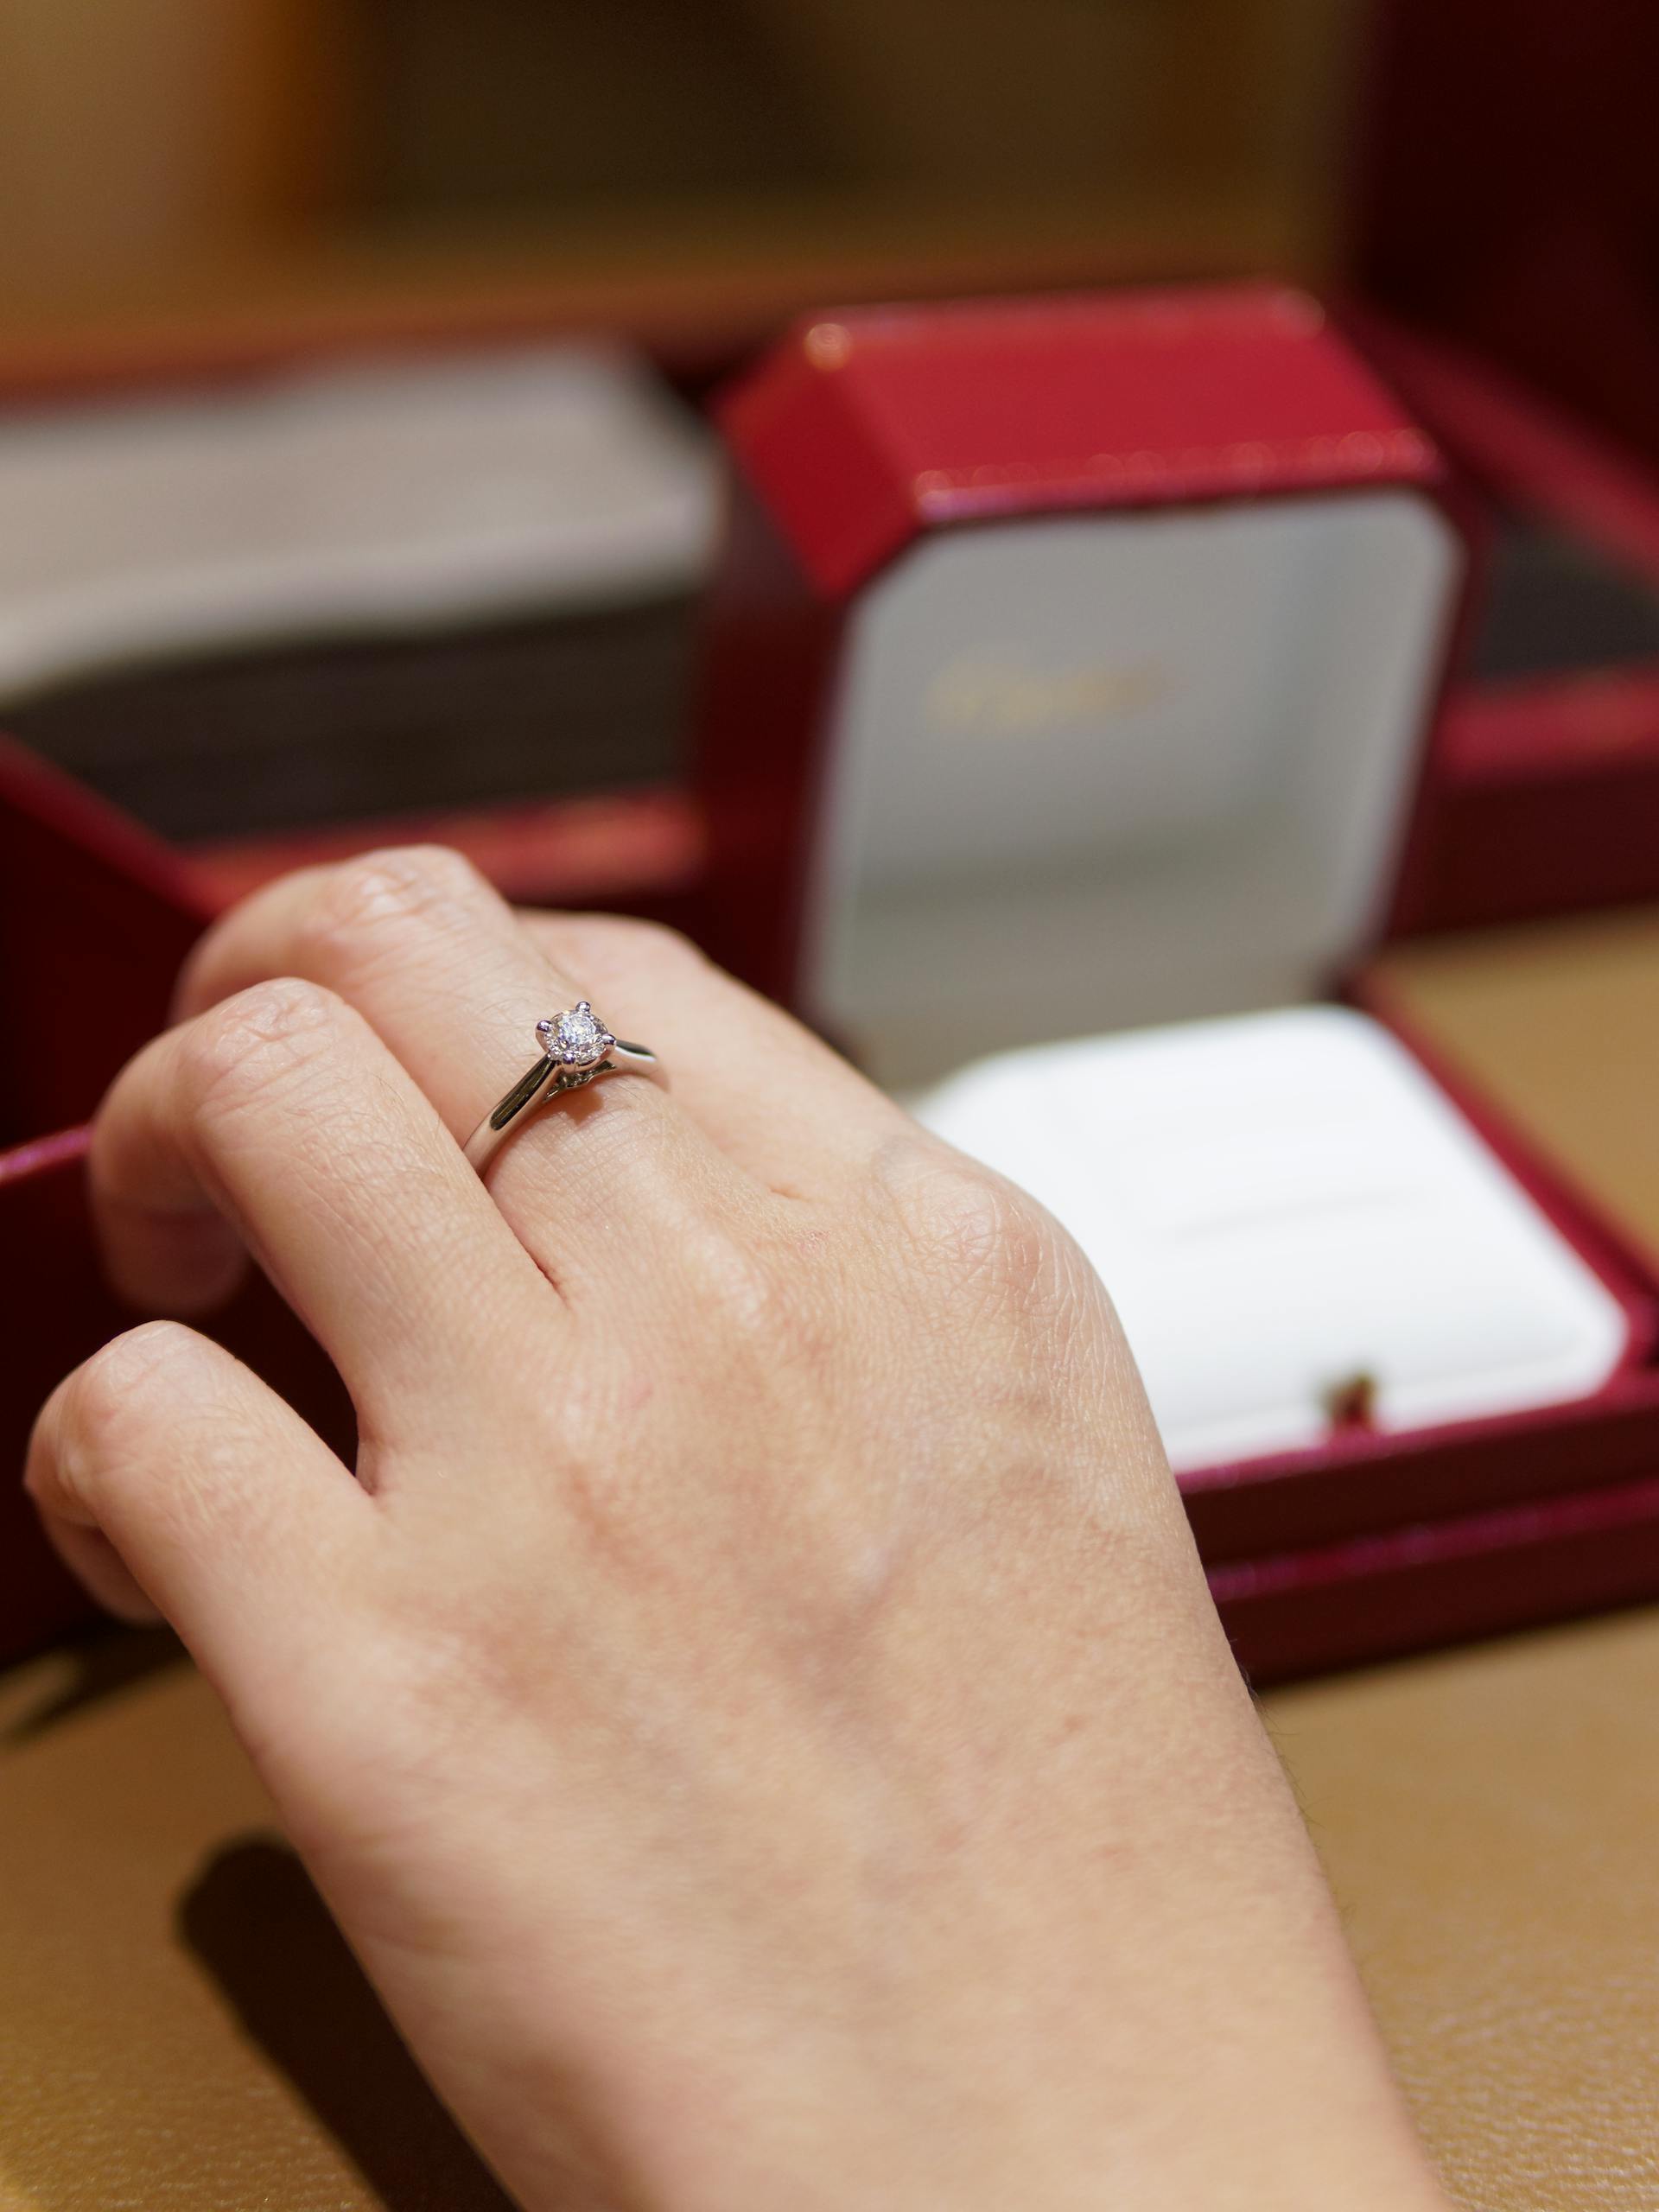 Nahaufnahme einer Frauenhand mit einem Ring | Quelle: Pexels